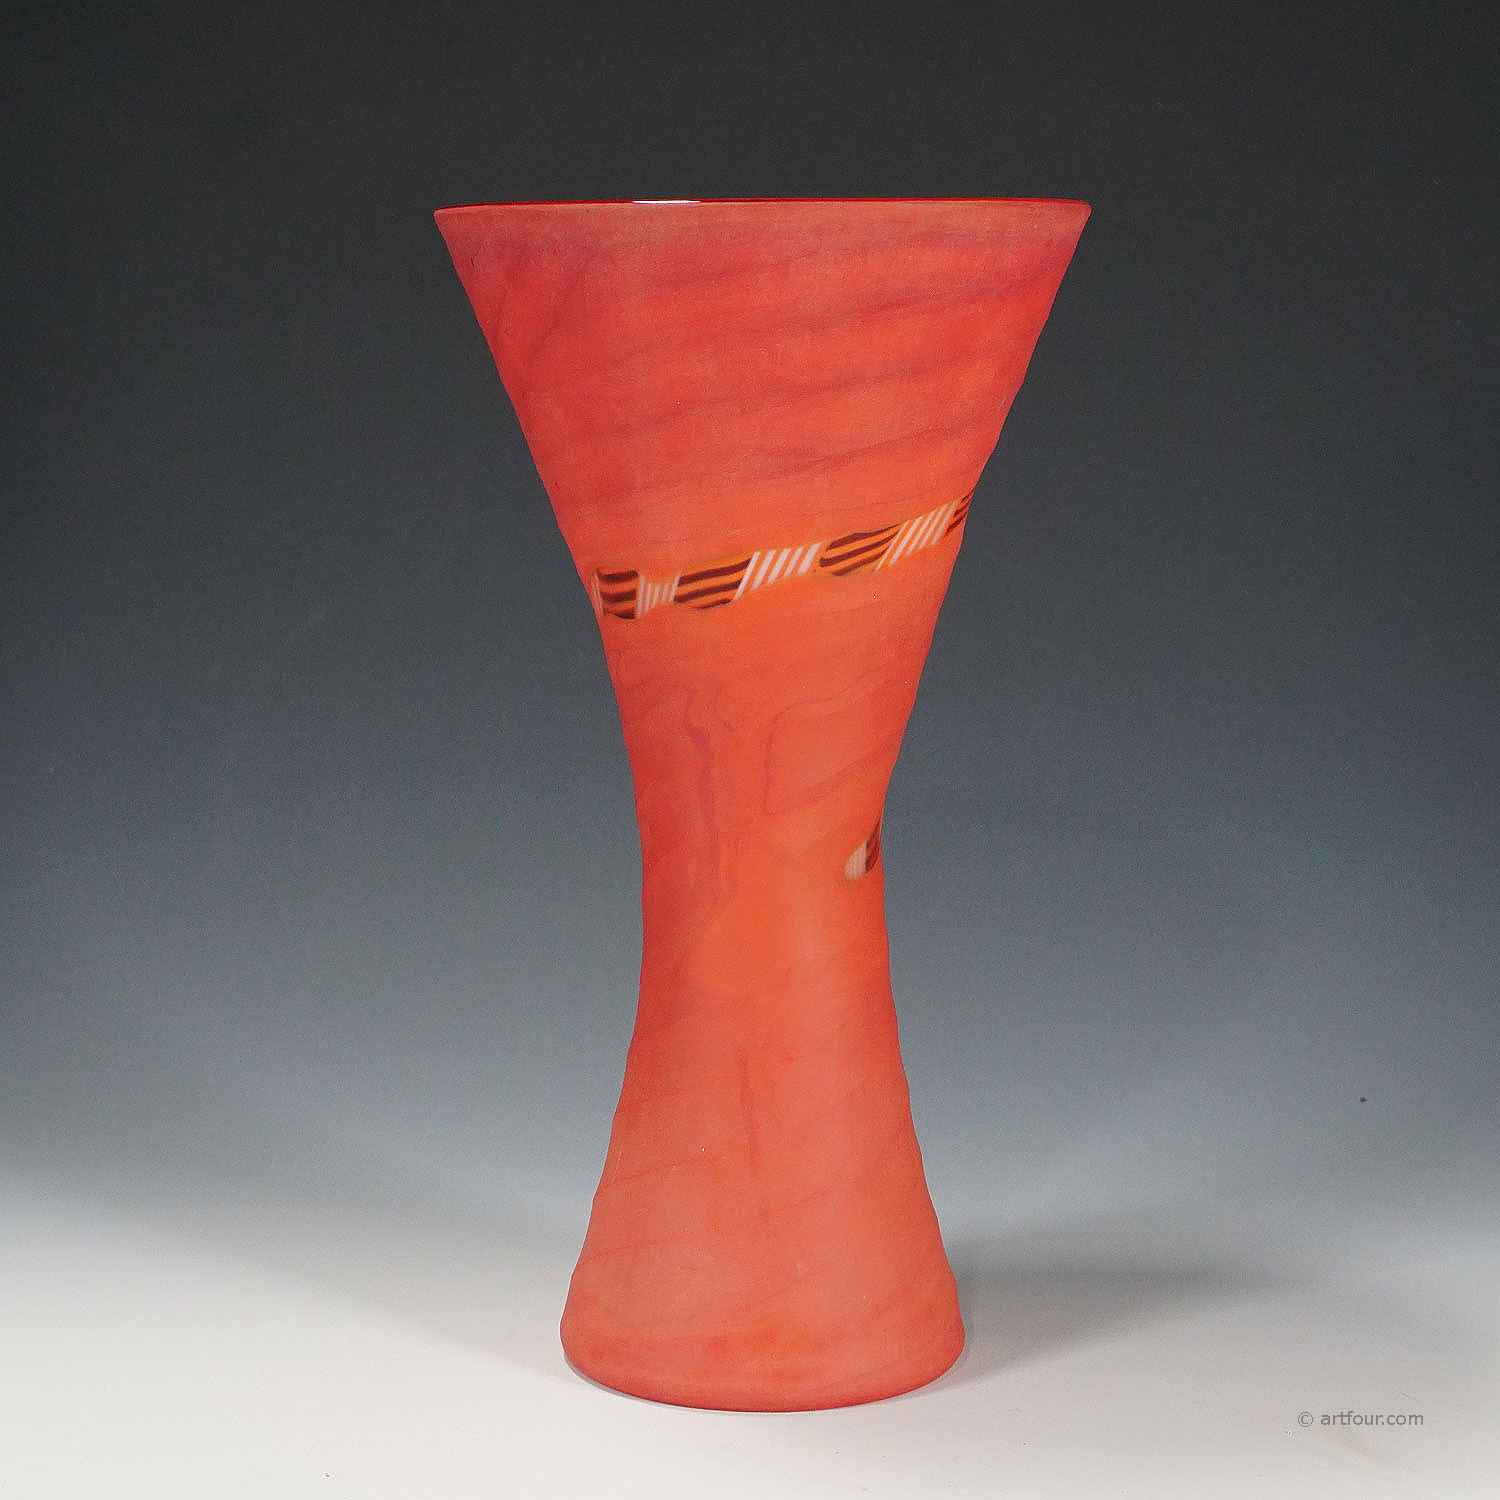 Vase 'Manto' designed by Rodolfo Dordoni for Venini, Murano